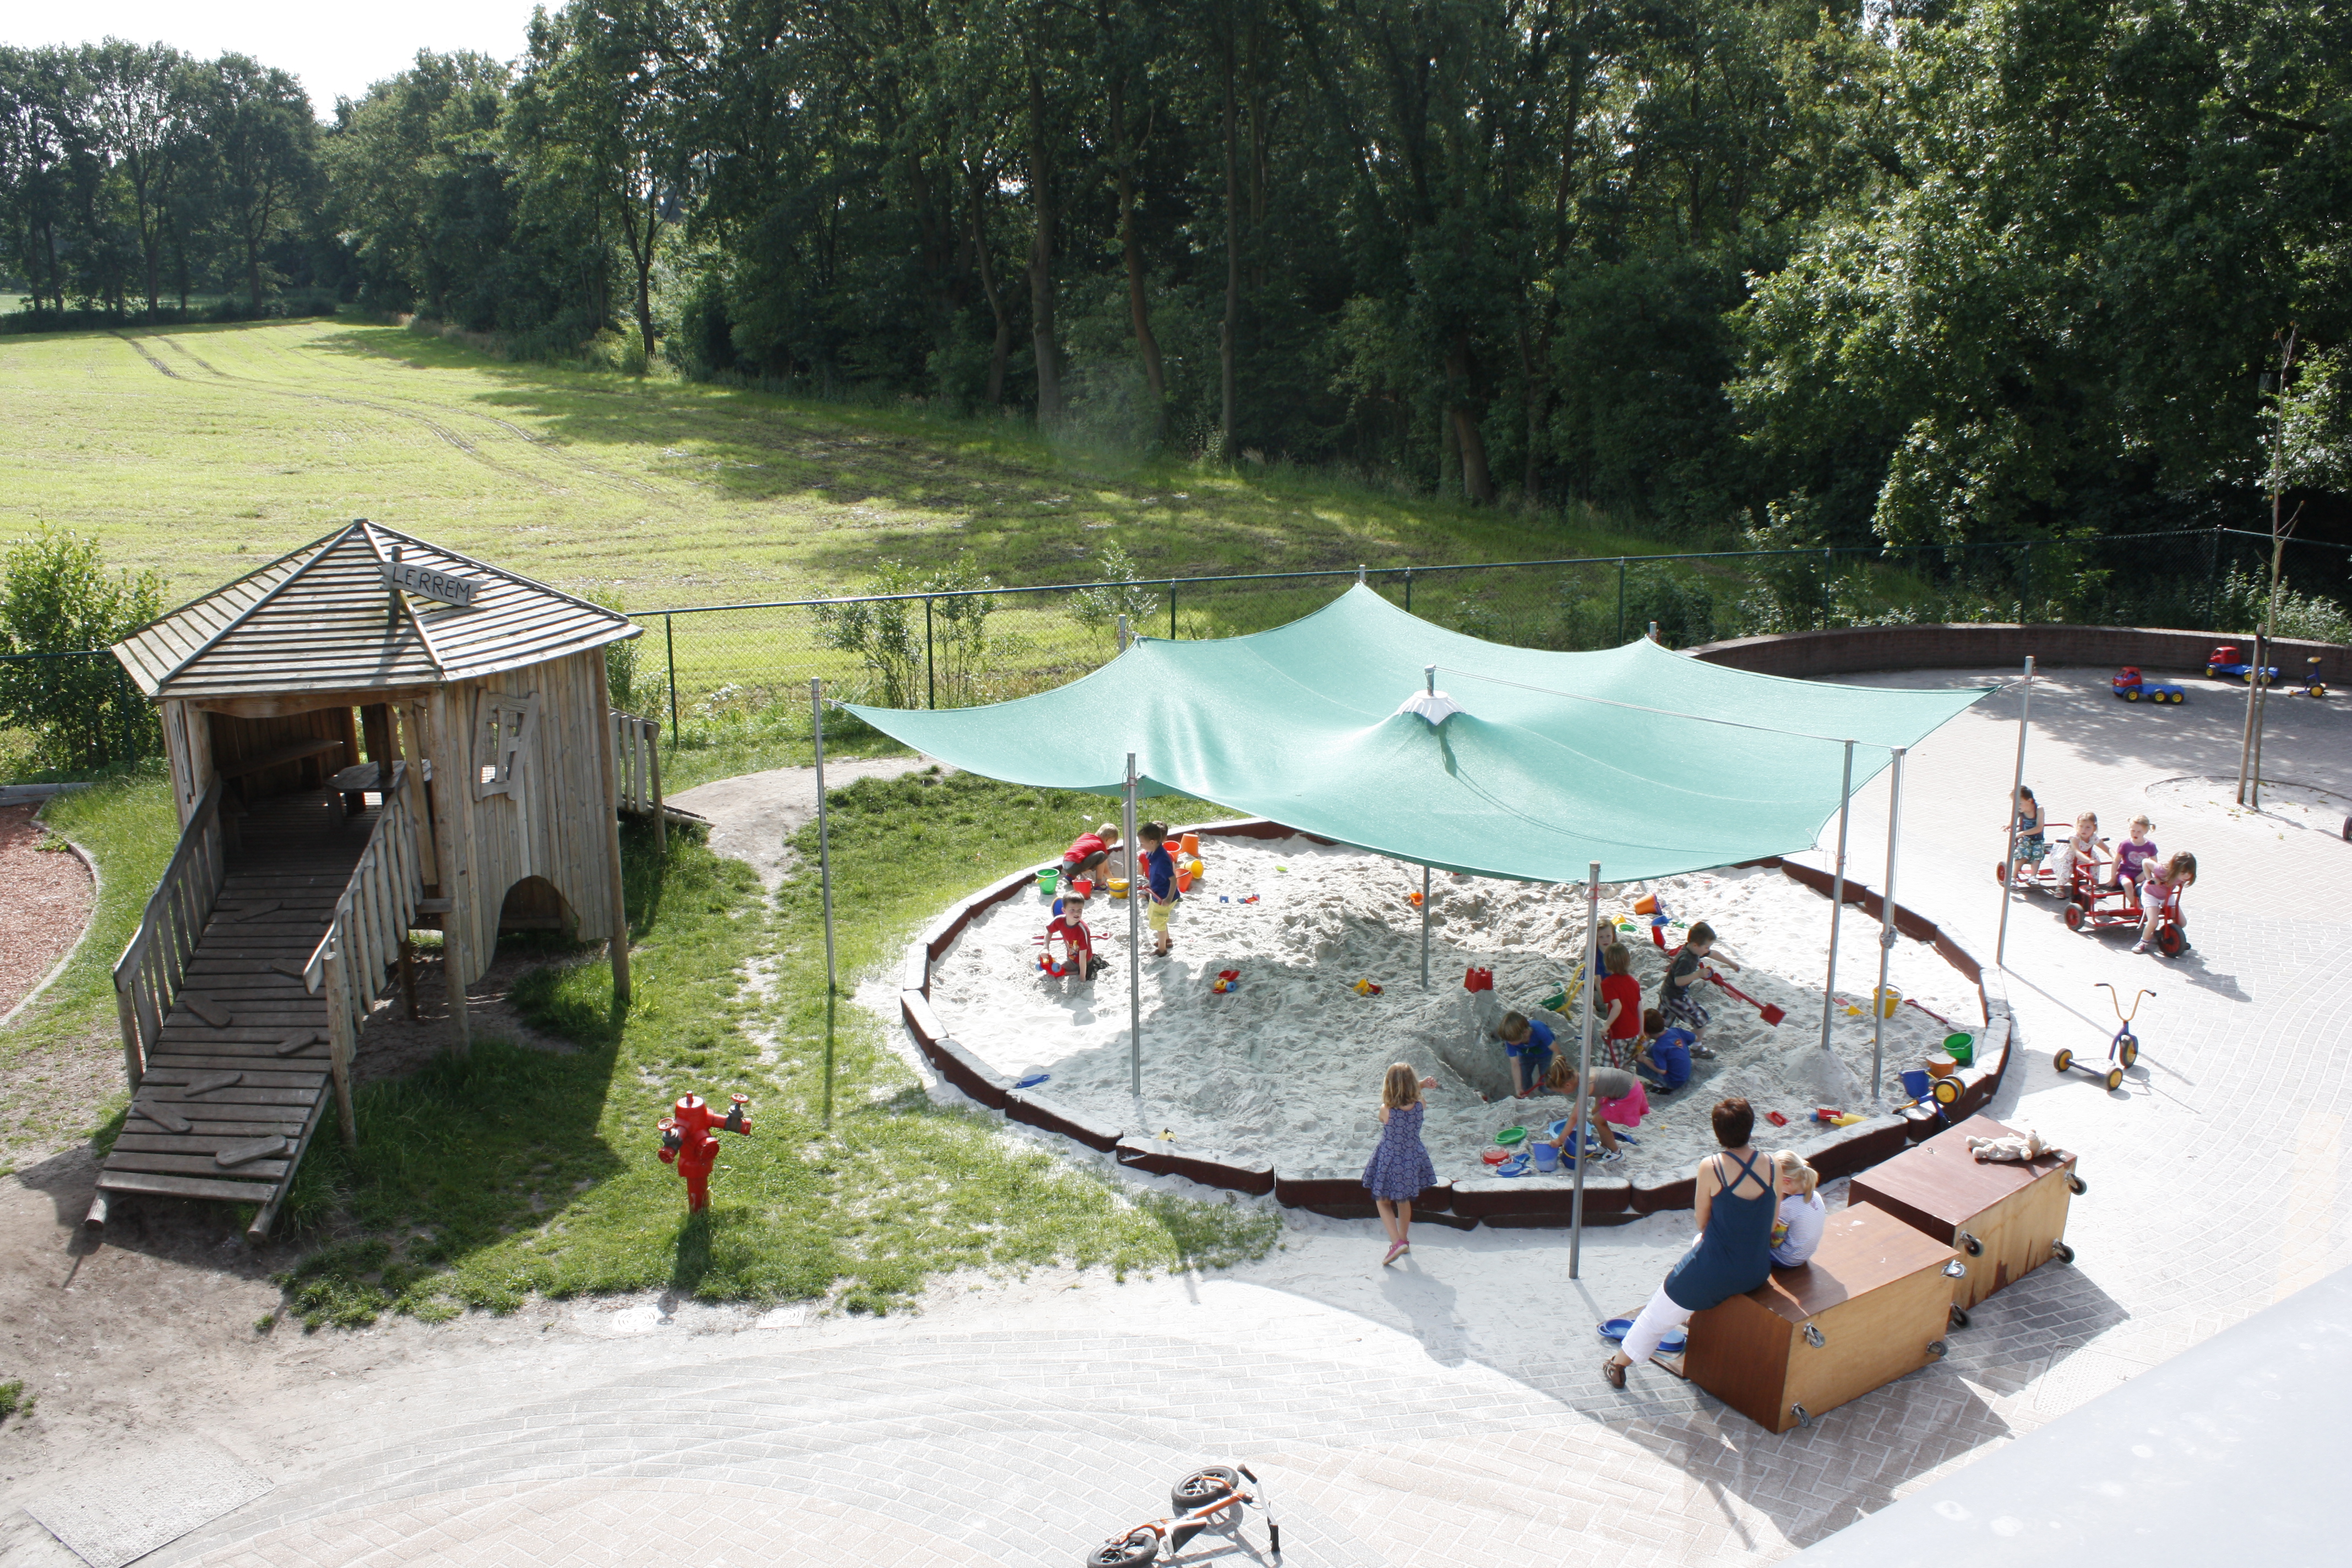  Speelplaats met zandbak en speelhuisje Stedelijke Basisschool Larum Geel fotograaf AGION